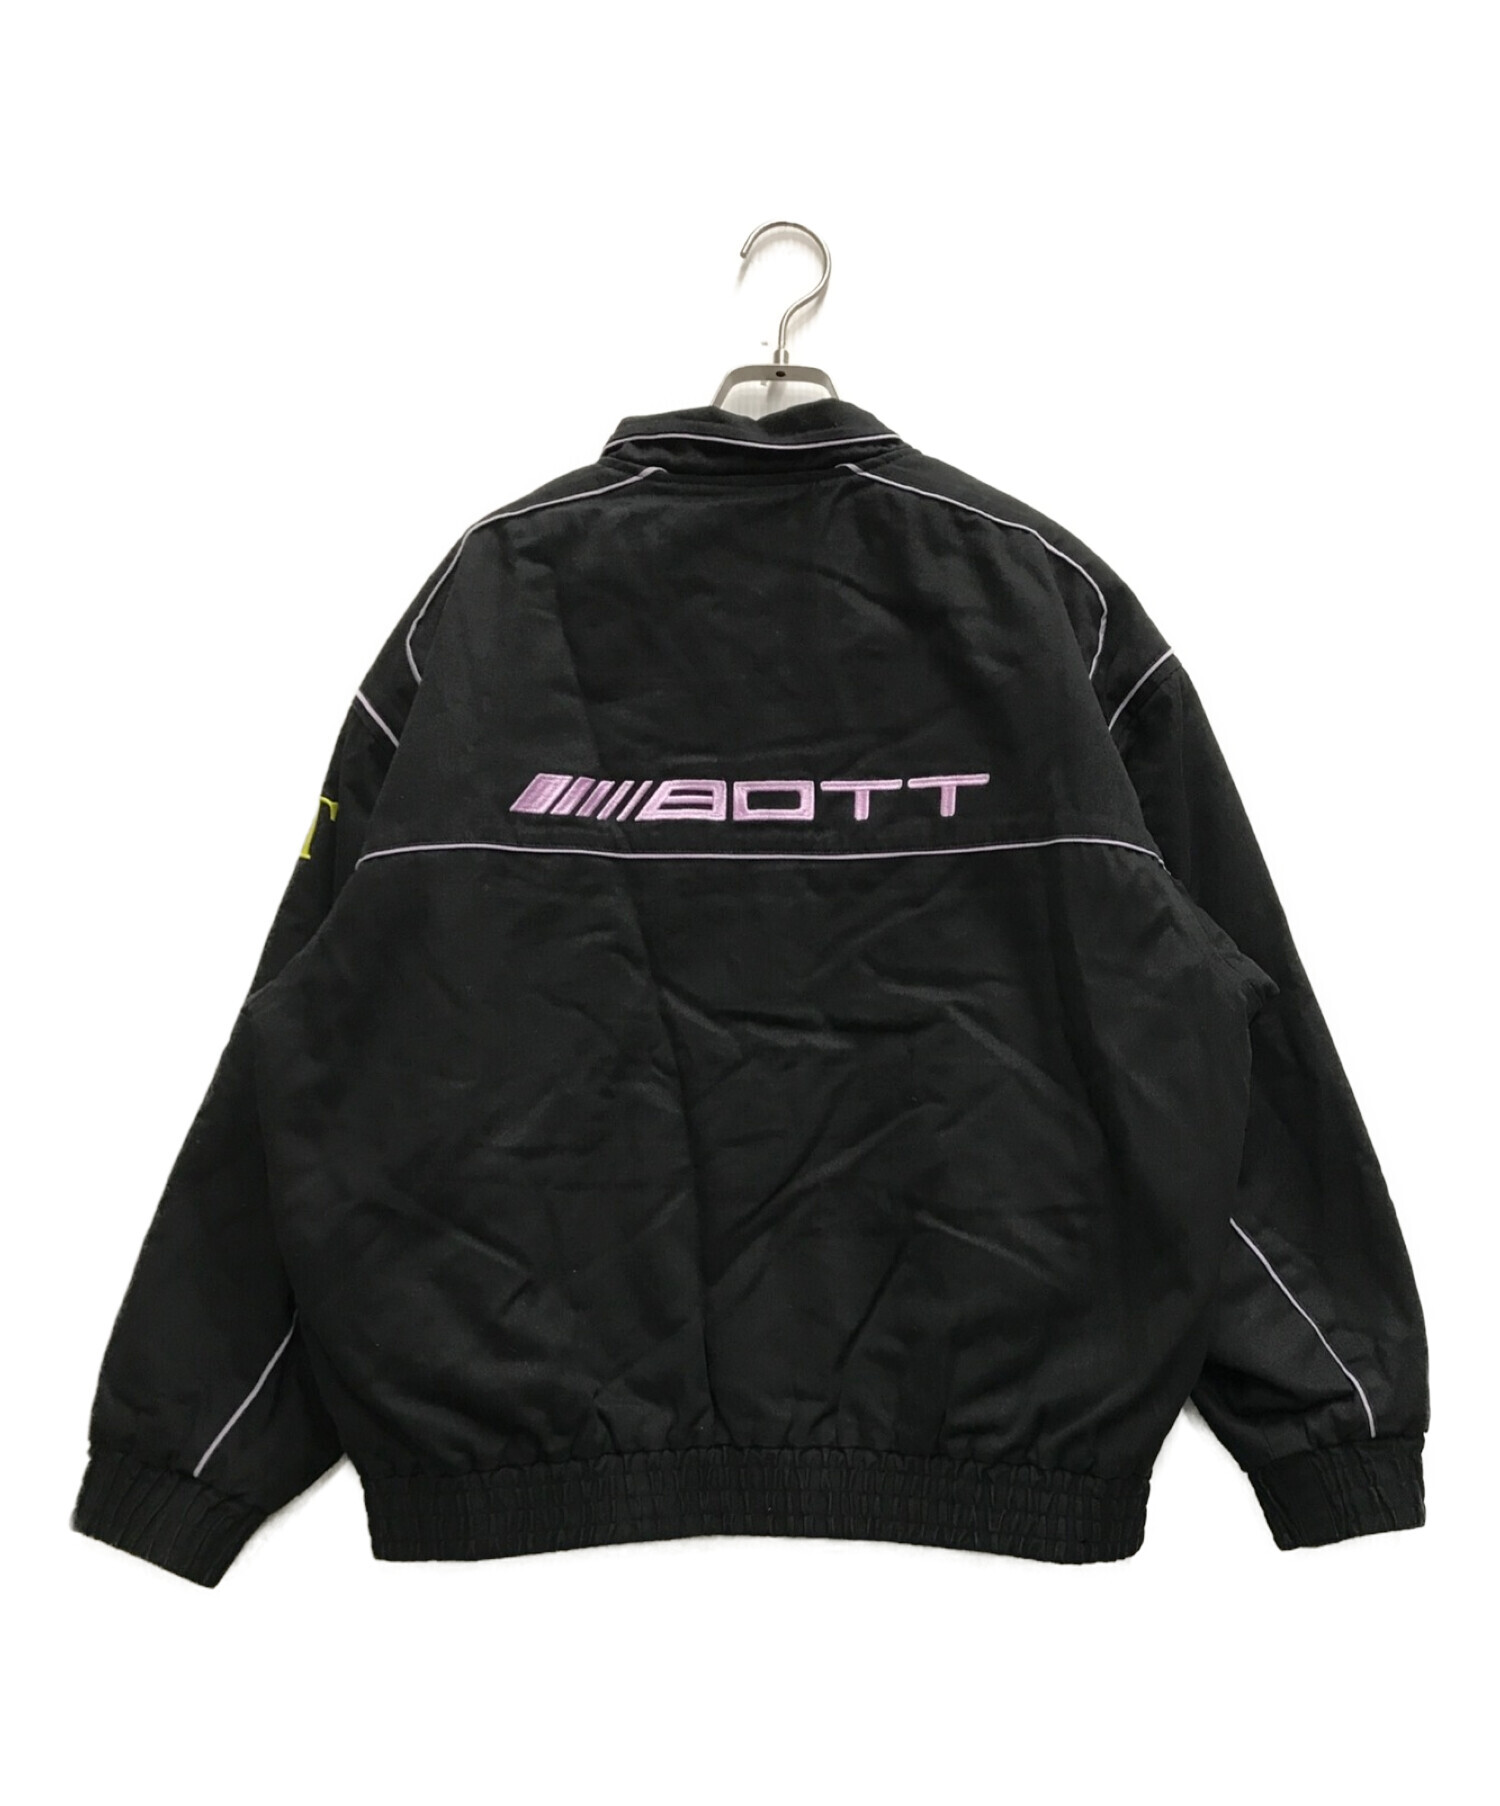 BoTT (ボット) Cotton Racing Jacket ブラック サイズ:Ⅿ